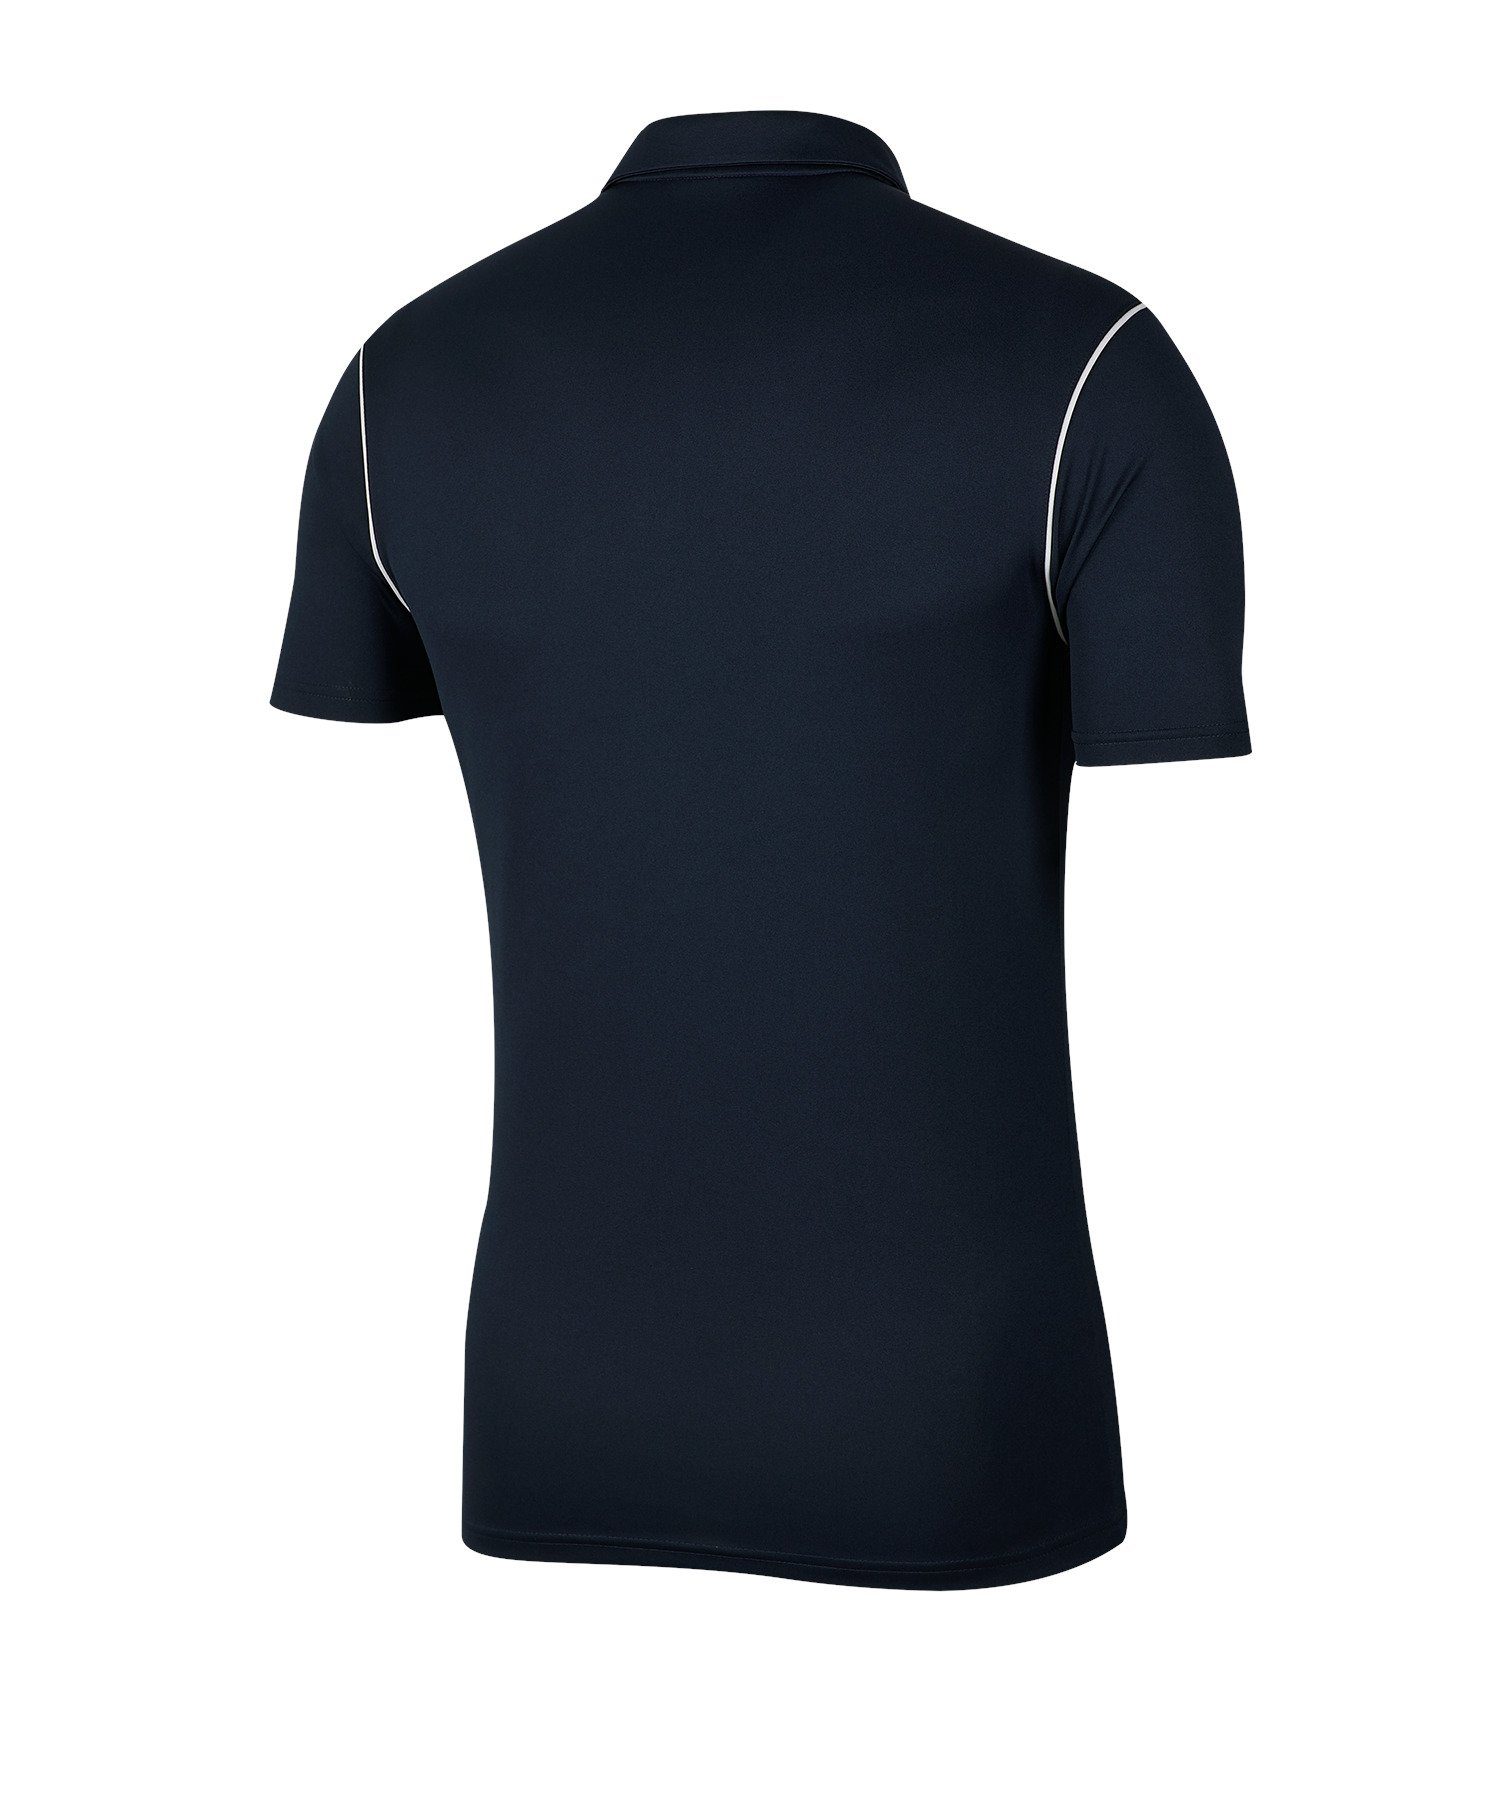 Nike T-Shirt Park 20 blauweiss Poloshirt default